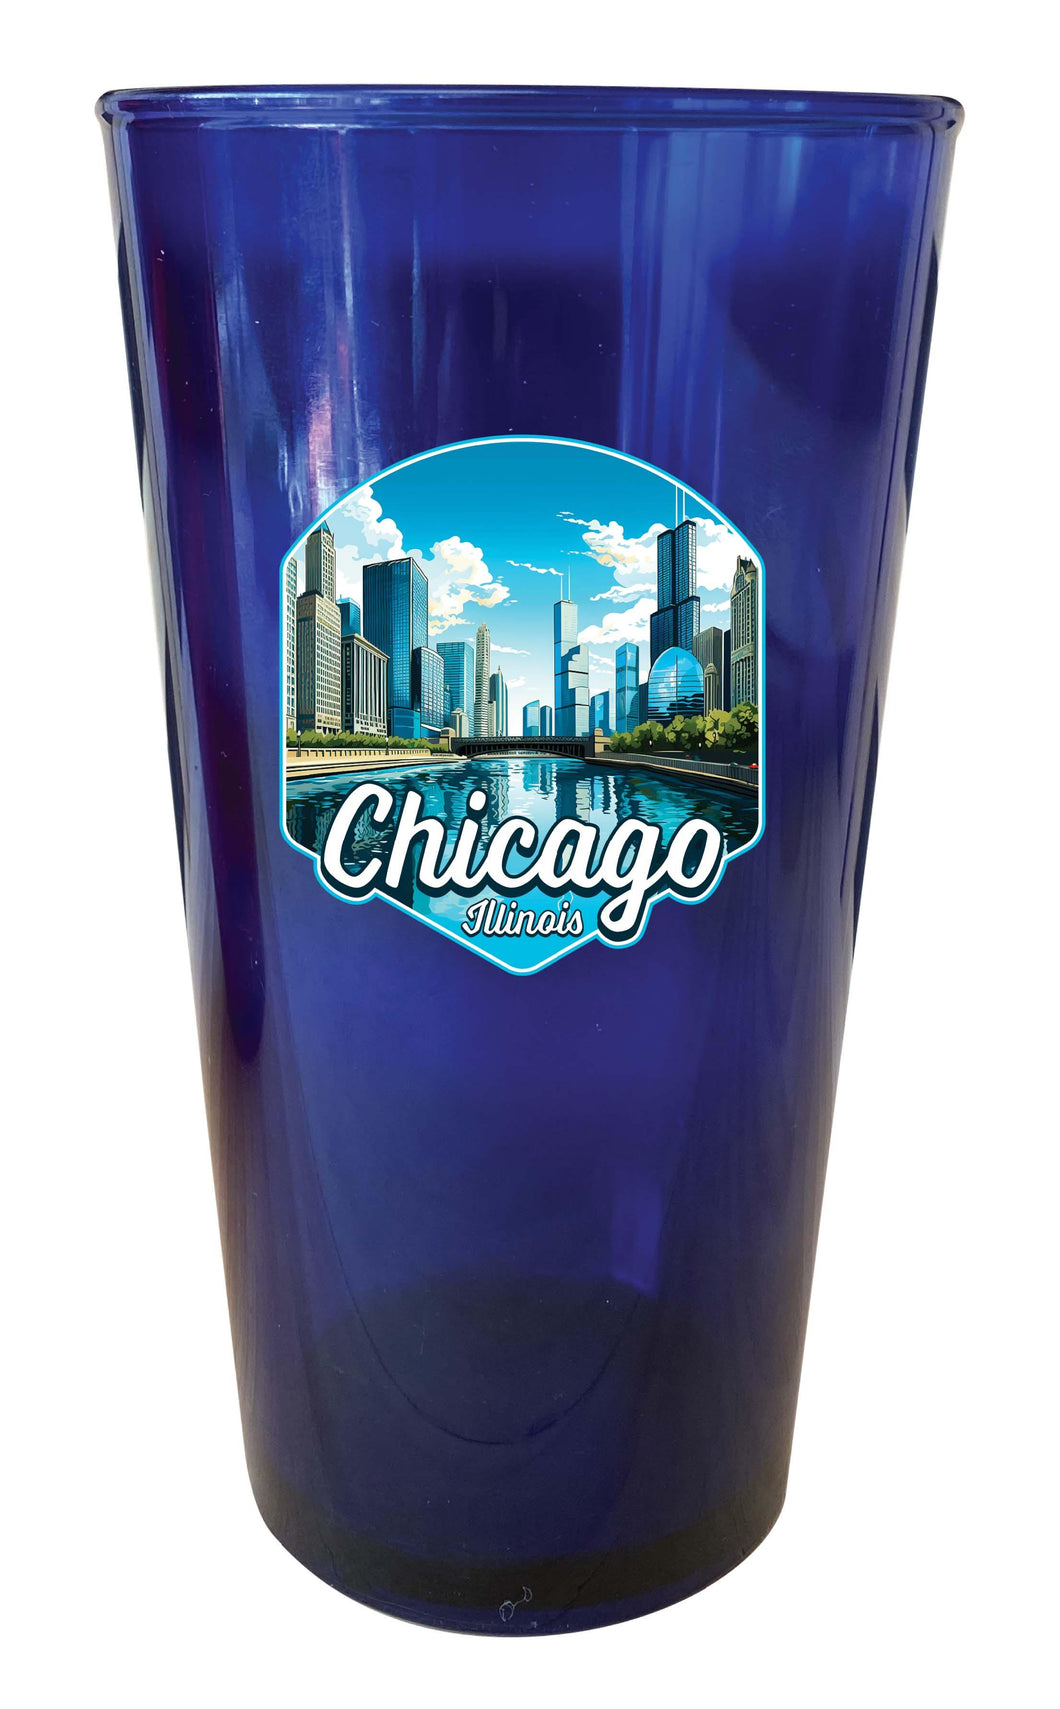 Chicago Illinois A Souvenir Plastic 16 oz pint